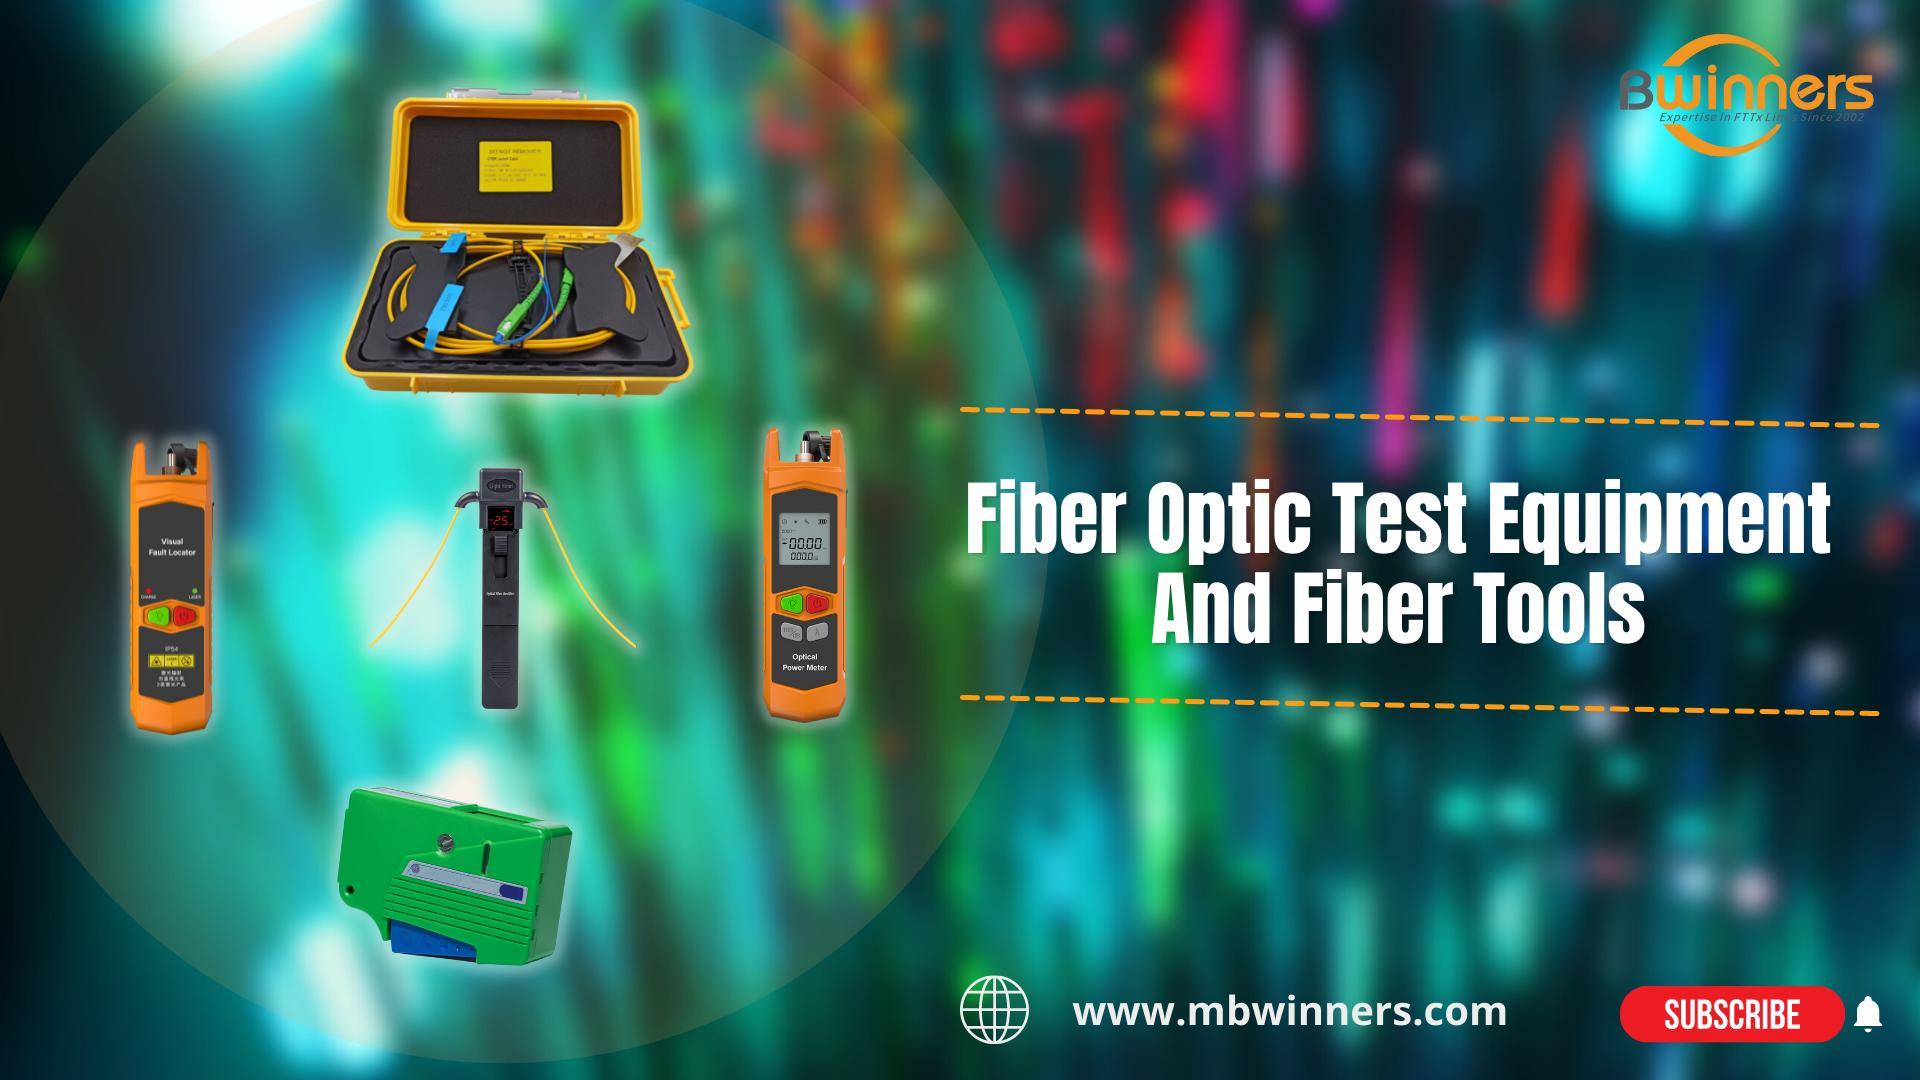 BWN-OTDR-LC2 Fiber Launch Box | MBN-OFI-35 Live Fibre Identifier | MBN-VFL-30-C VFL Fiber | MBN-OPM-Mini Mini Power Meter | MBN-OCC Fiber Cleaner | Fiber Optic Test Equipment And Fiber Tools | #FTTH #FTTx | Bwinners